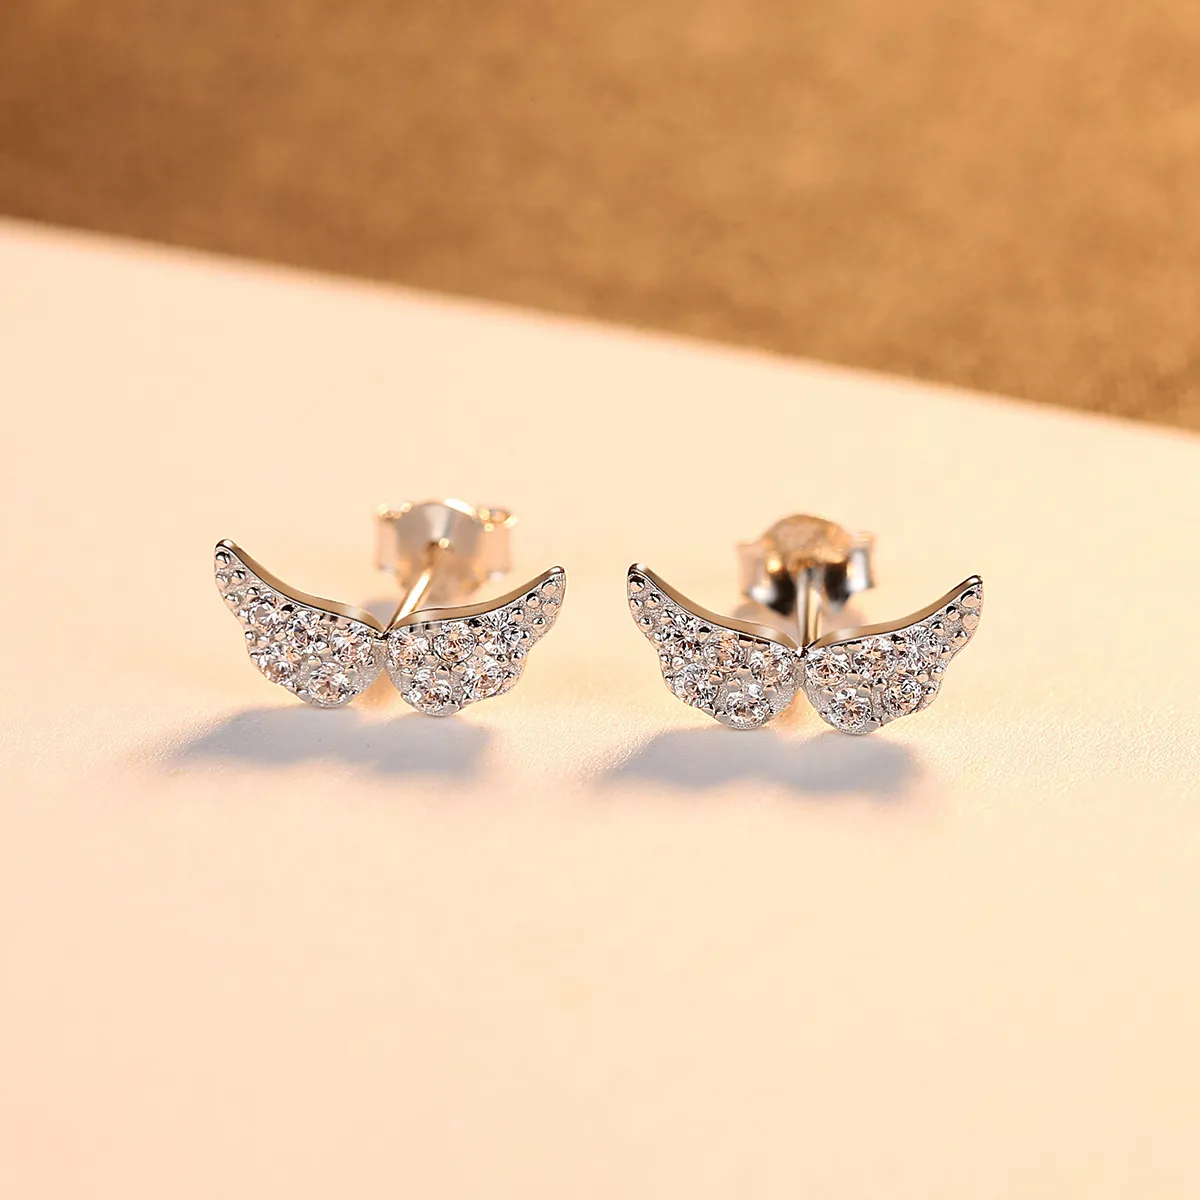 Korean New Sweet Angel Wings S925 Silver Stud Earrings Jewelry Fashion Women Shiny Zircon Plated 18k Gold Earrings for Women's Valentine's Day Birthday Gift SPC